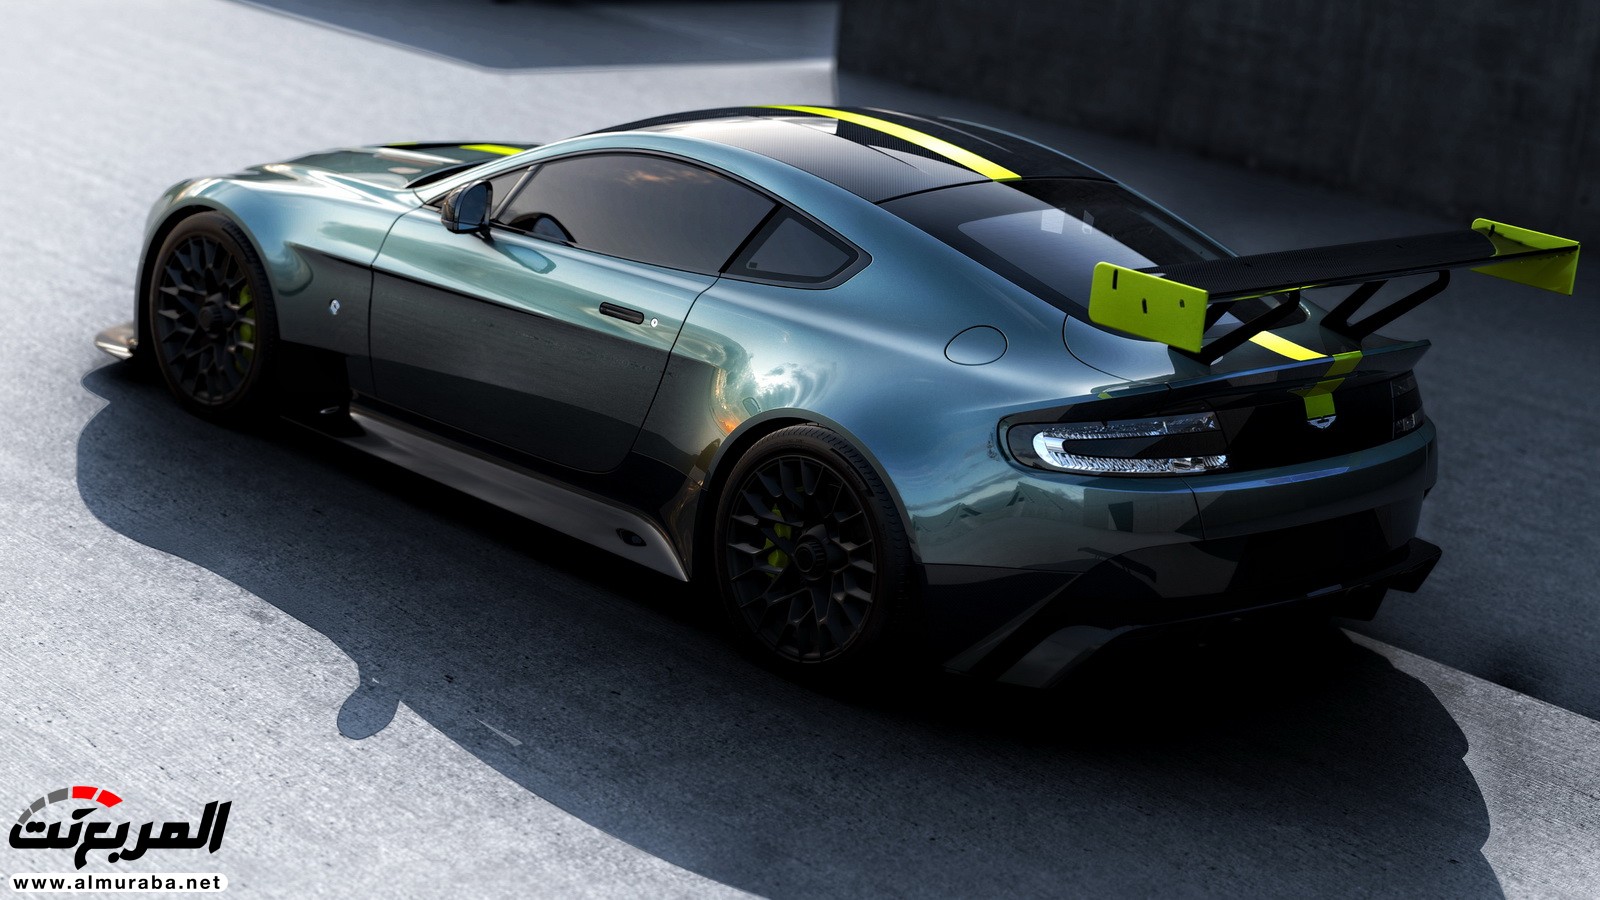 "أستون مارتن" تعرض نسخ كونسيبت عالية الأداء لسيارتي فانتاج ورابيد في جنيف Aston Martin 26